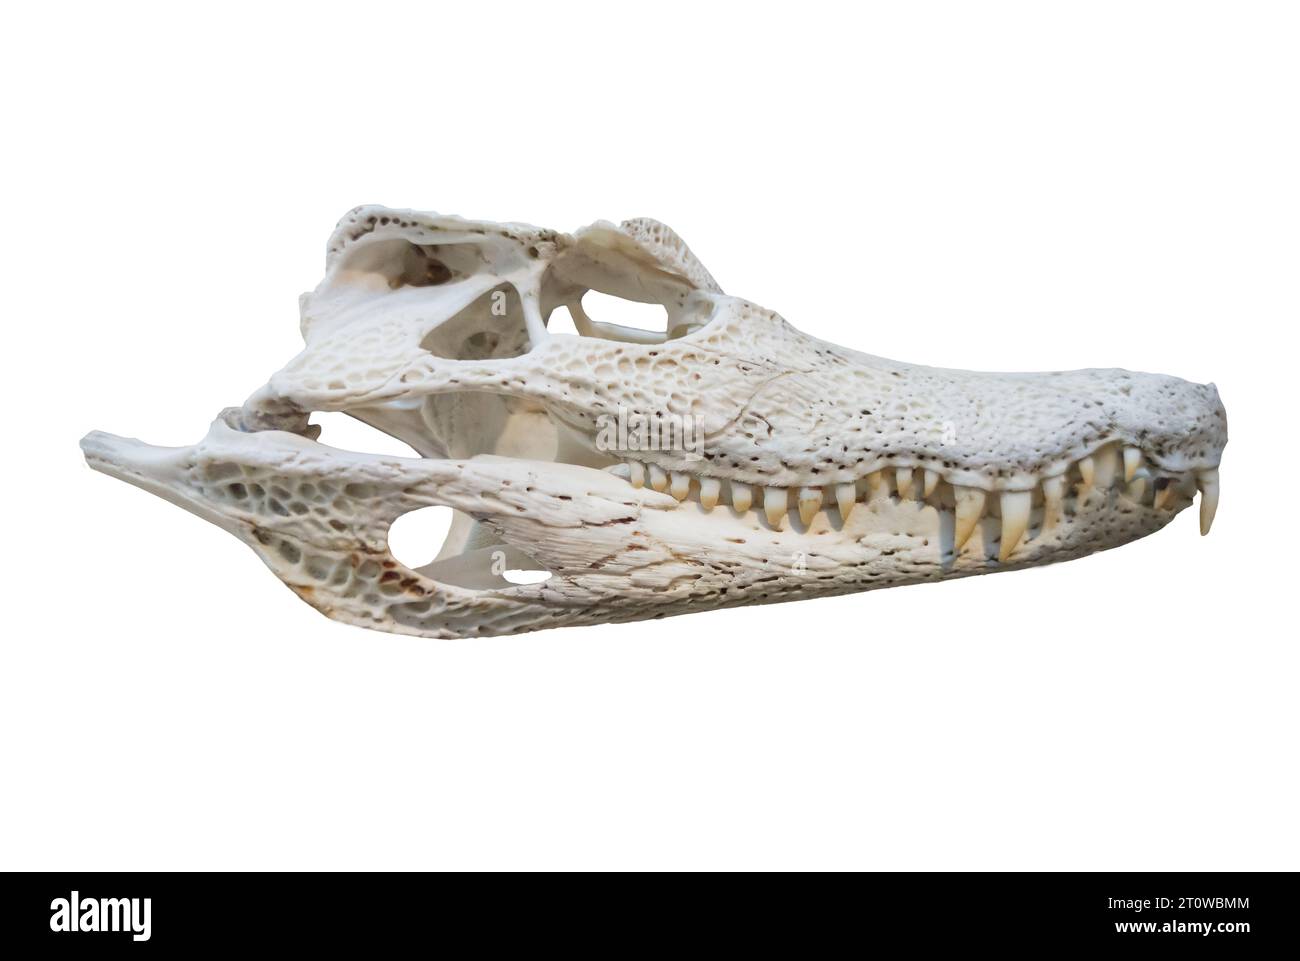 Crâne de caïman à lunettes également nommé Caiman crocodilus. Isolé sur fond blanc Banque D'Images